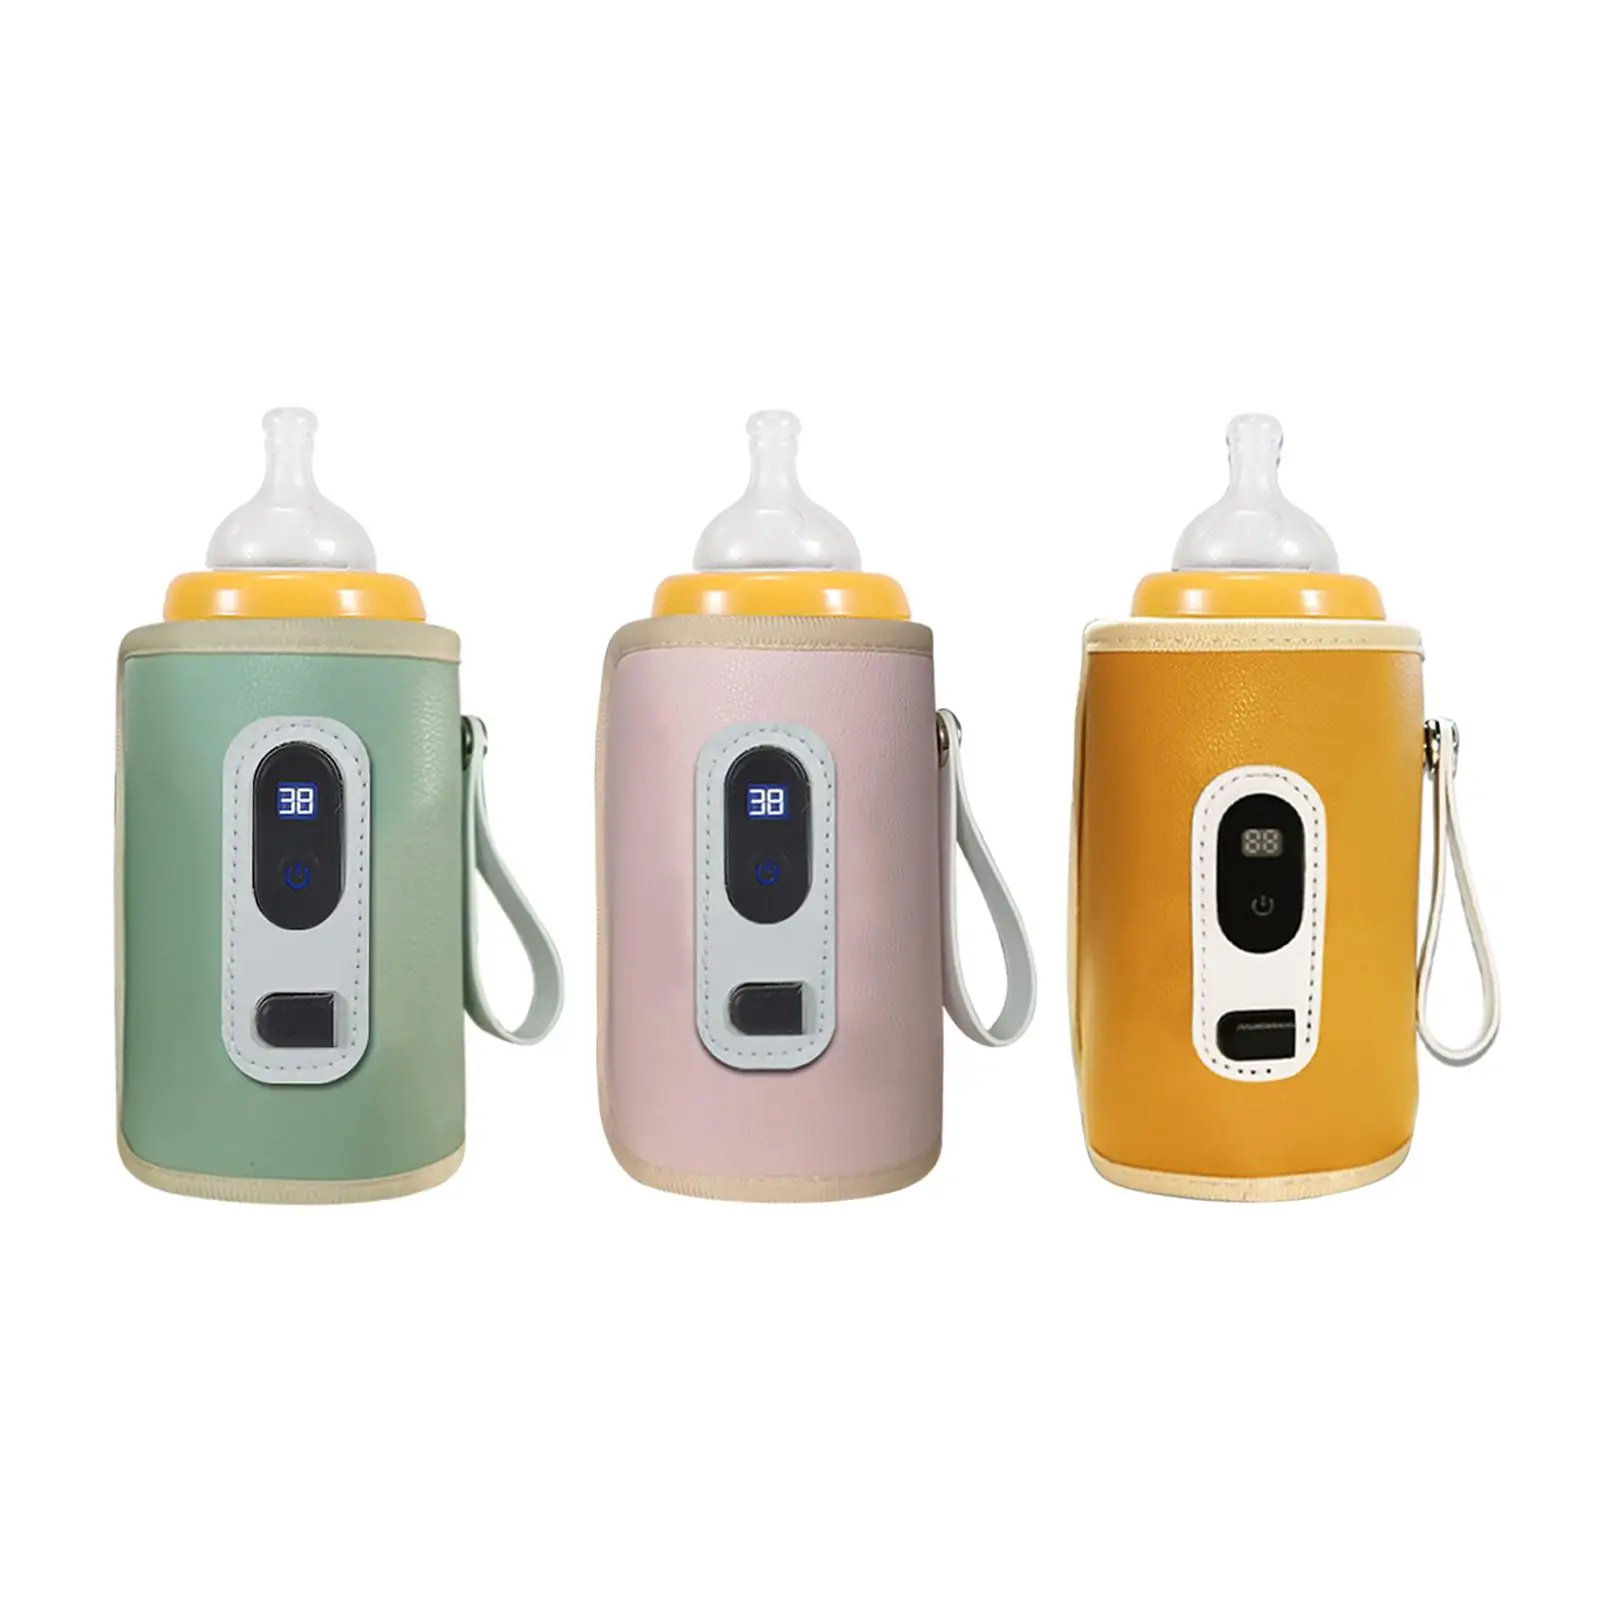 

Держатель для молока с регулируемой температурой, USB-кружка, подогреватель молока, детская бутылочка, грелка для пикника, ежедневного использования, для кемпинга, путешествий, покупок